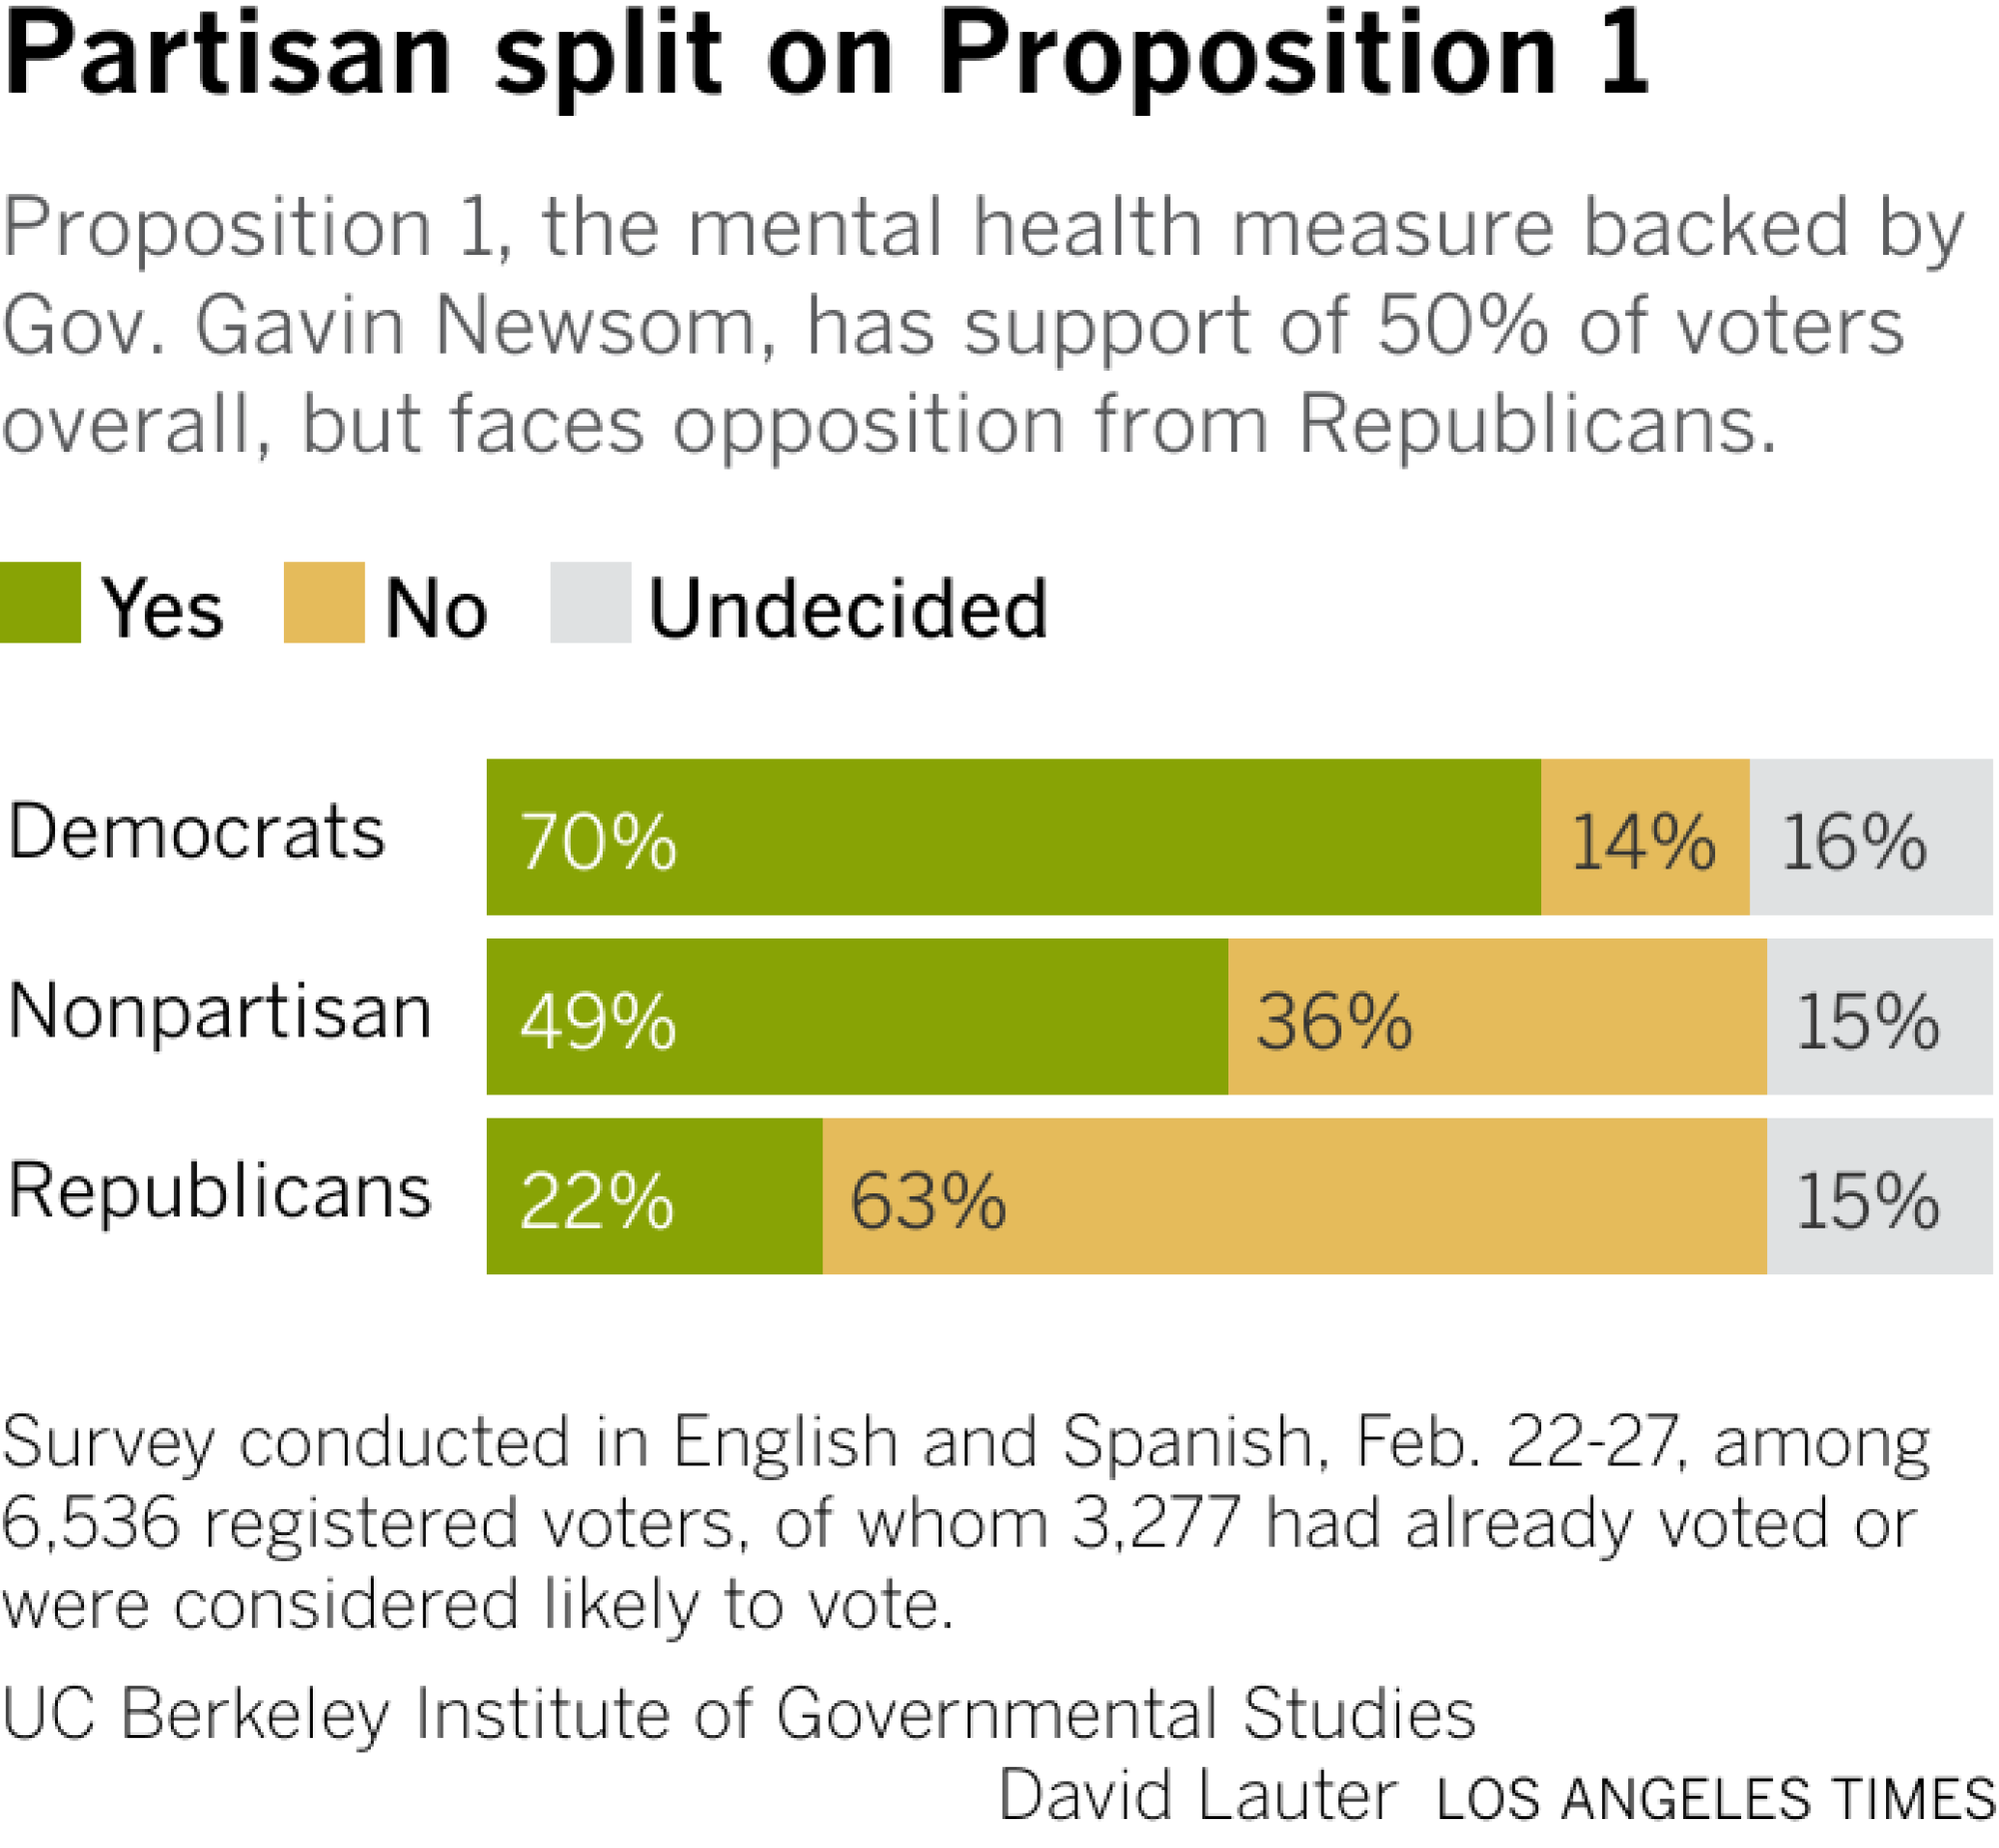 条形图显示支持或反对提案 1 的民主党人、无党派选民和共和党人的比例。